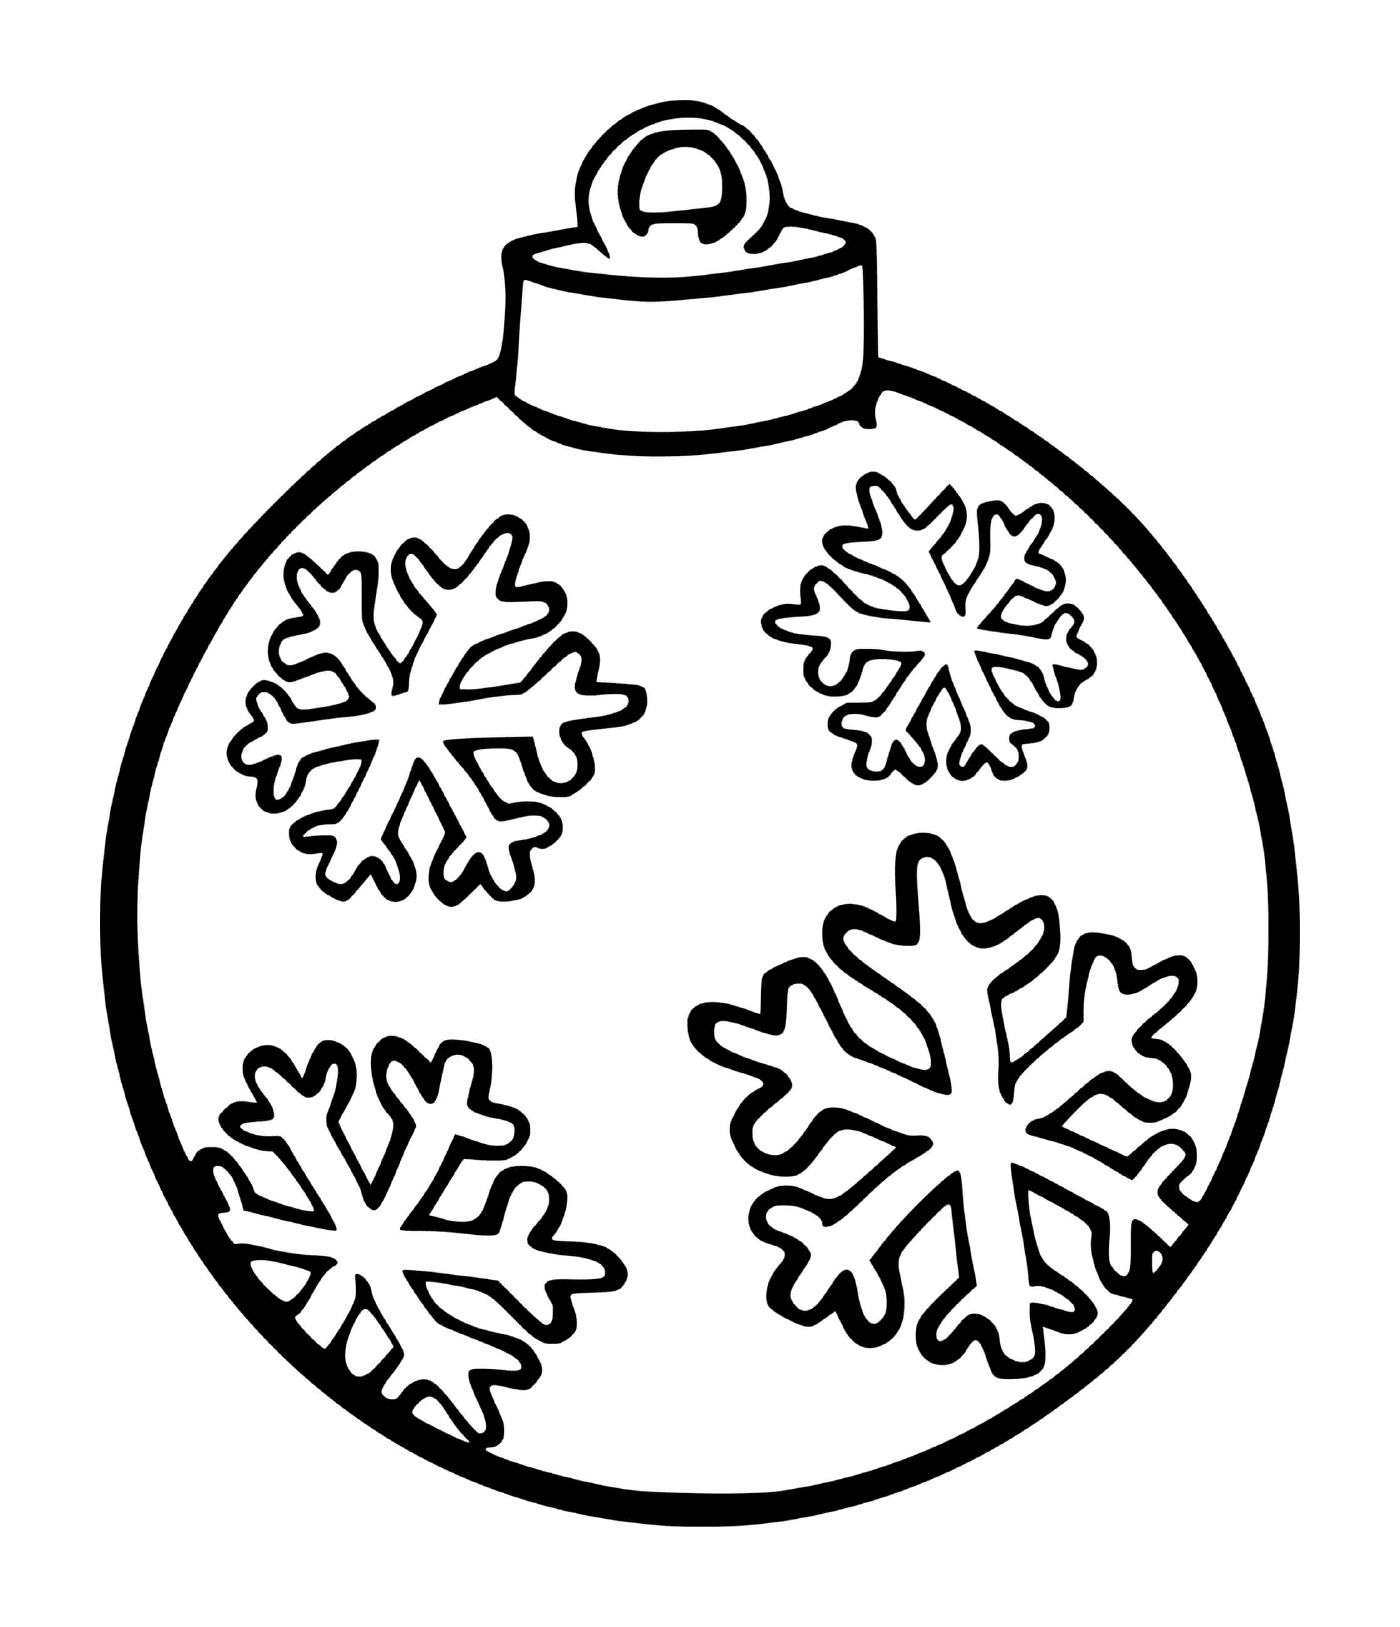  Un copo de nieve en una bola de árbol de Navidad 